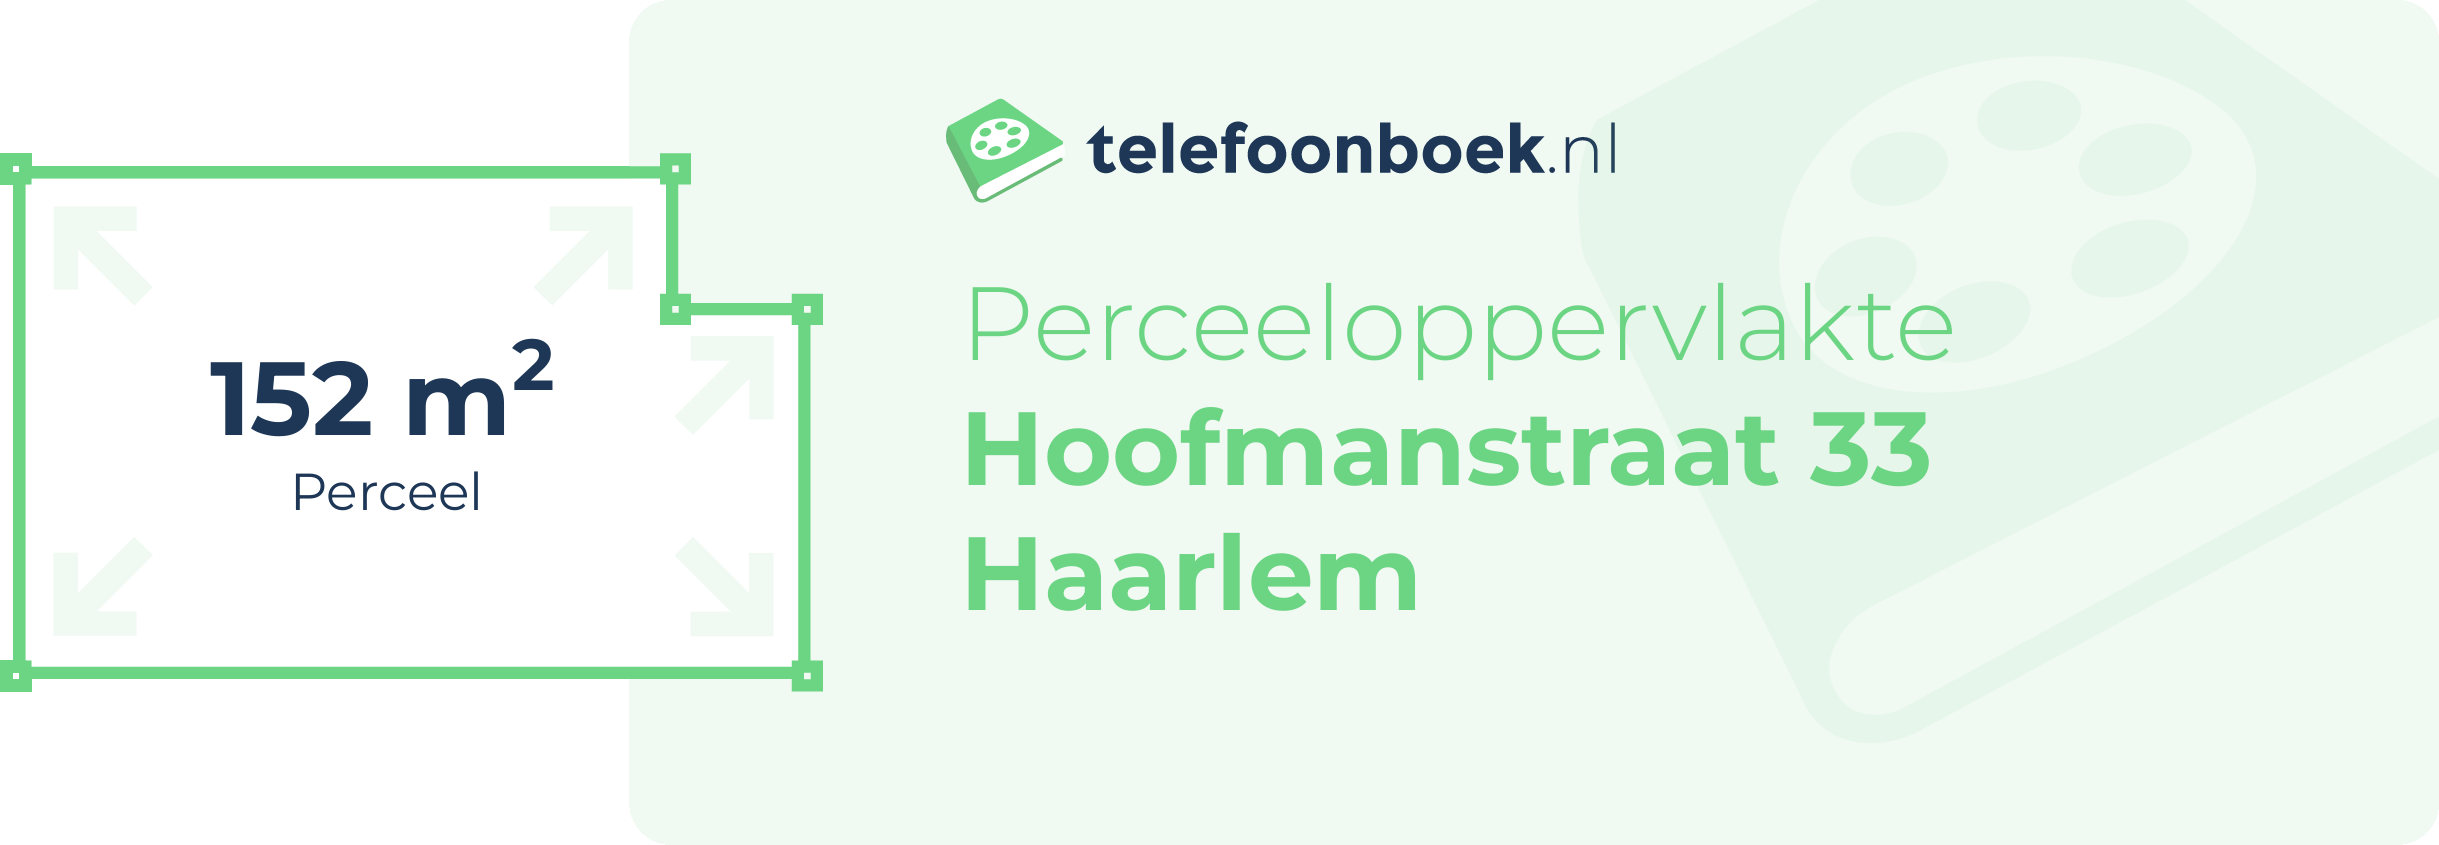 Perceeloppervlakte Hoofmanstraat 33 Haarlem